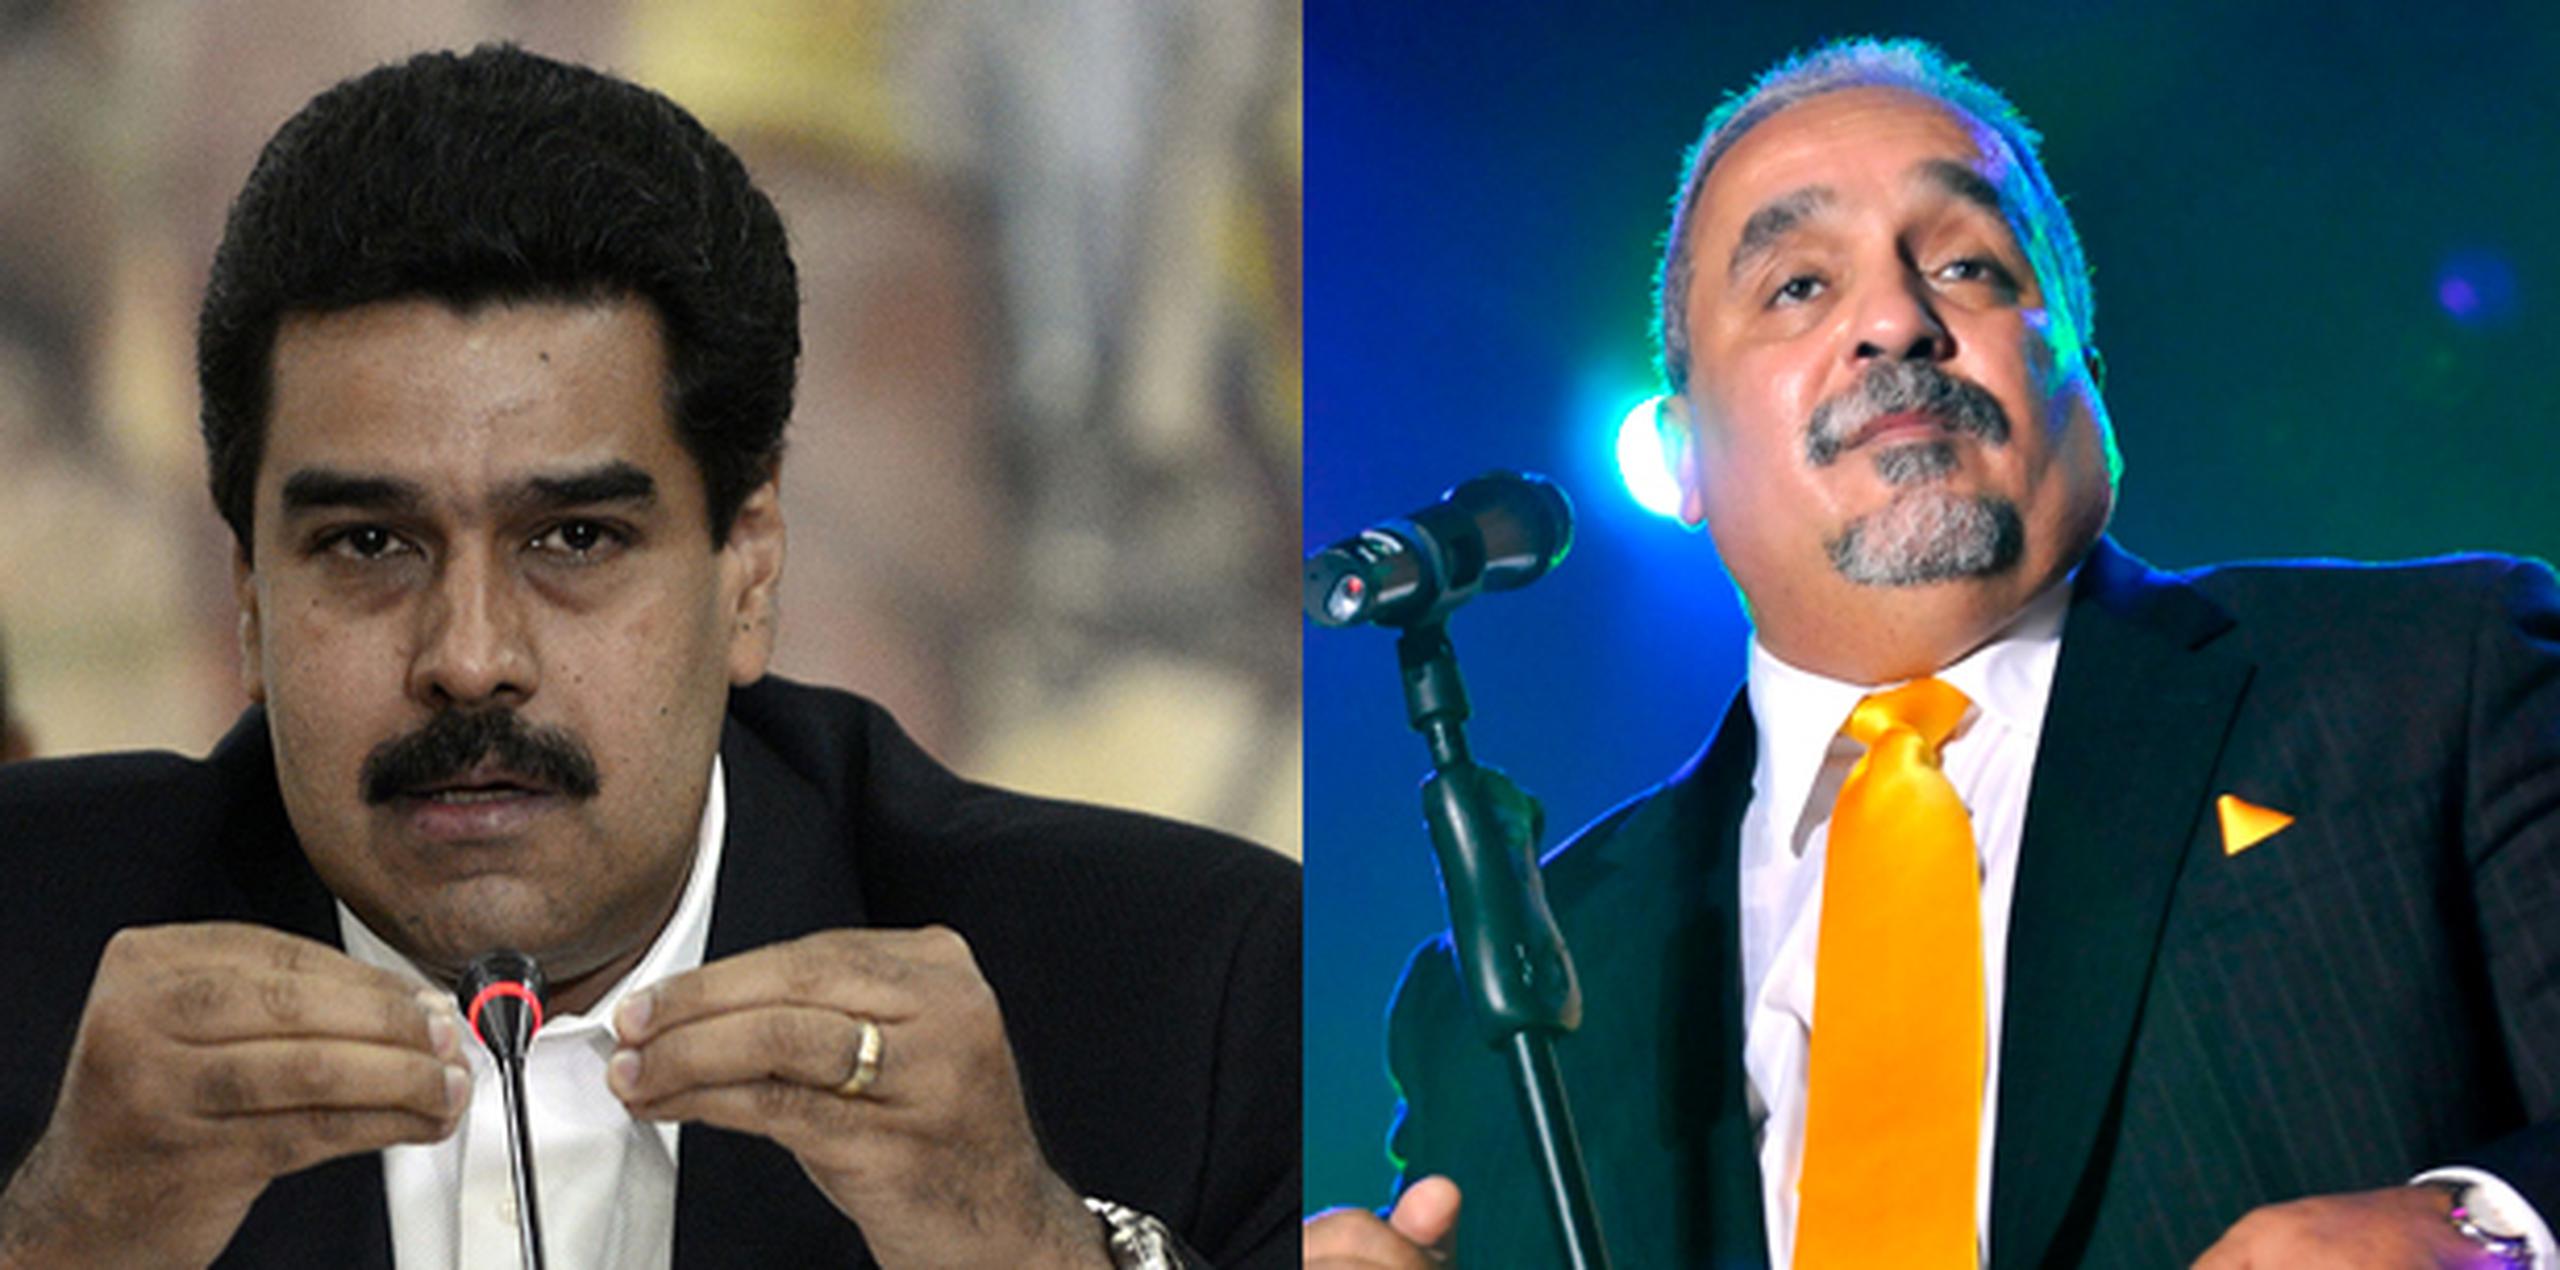 El candidato a la presidencia de Venezuela, Nicolás Maduro, y el cantante puertorriqueño Willie Colón se dedicaron canciones mutuamente y no es porque se tengan mucho cariño. (Archivo)